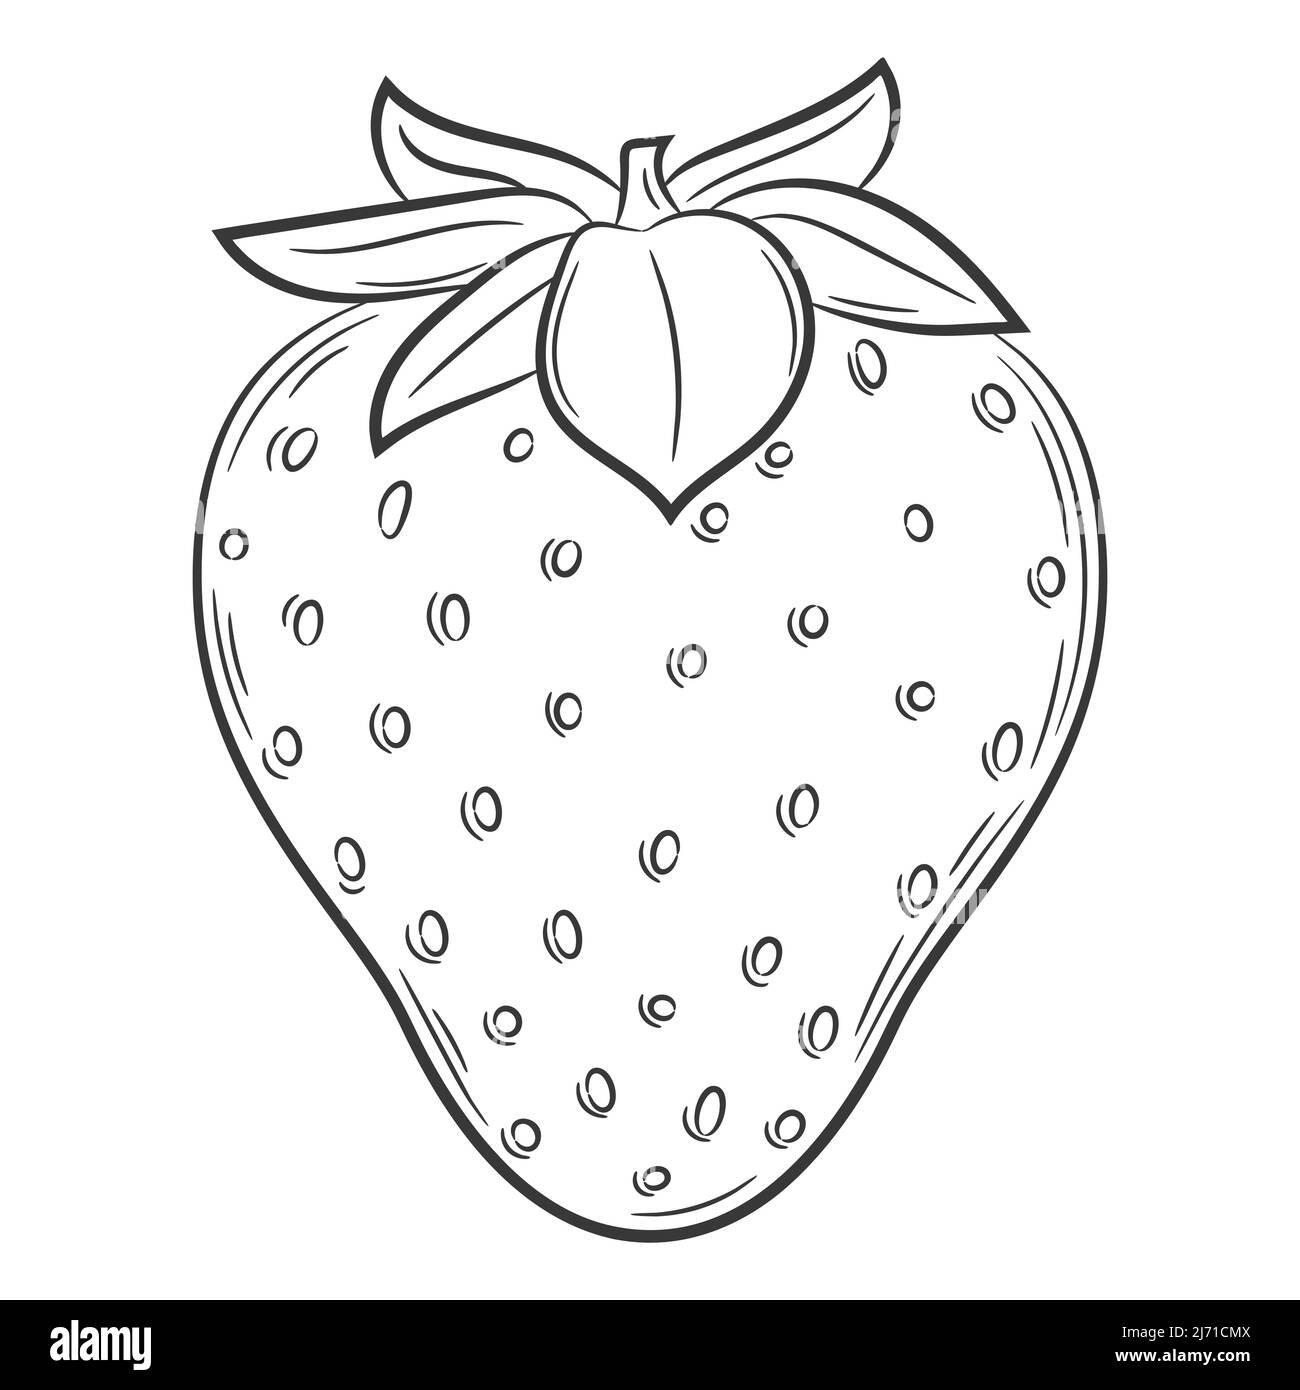 Erdbeerfrucht im linearen Stil. Schwarz-Weiß Vektor dekoratives Element, von Hand gezeichnet.isoliert auf weißem Hintergrund Stock Vektor